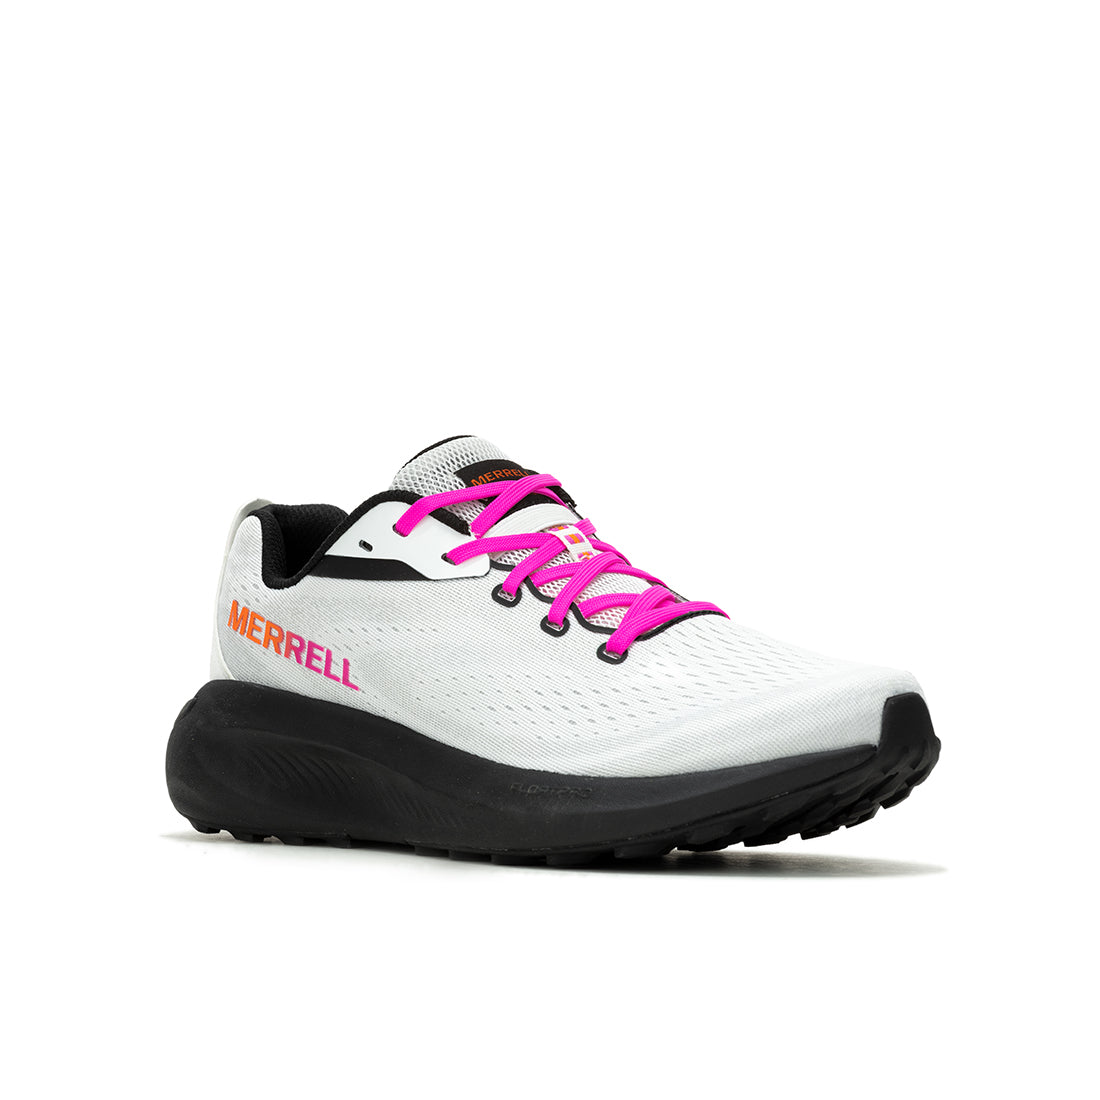 Morphlite - White/Multi Mens Trail Running Shoes